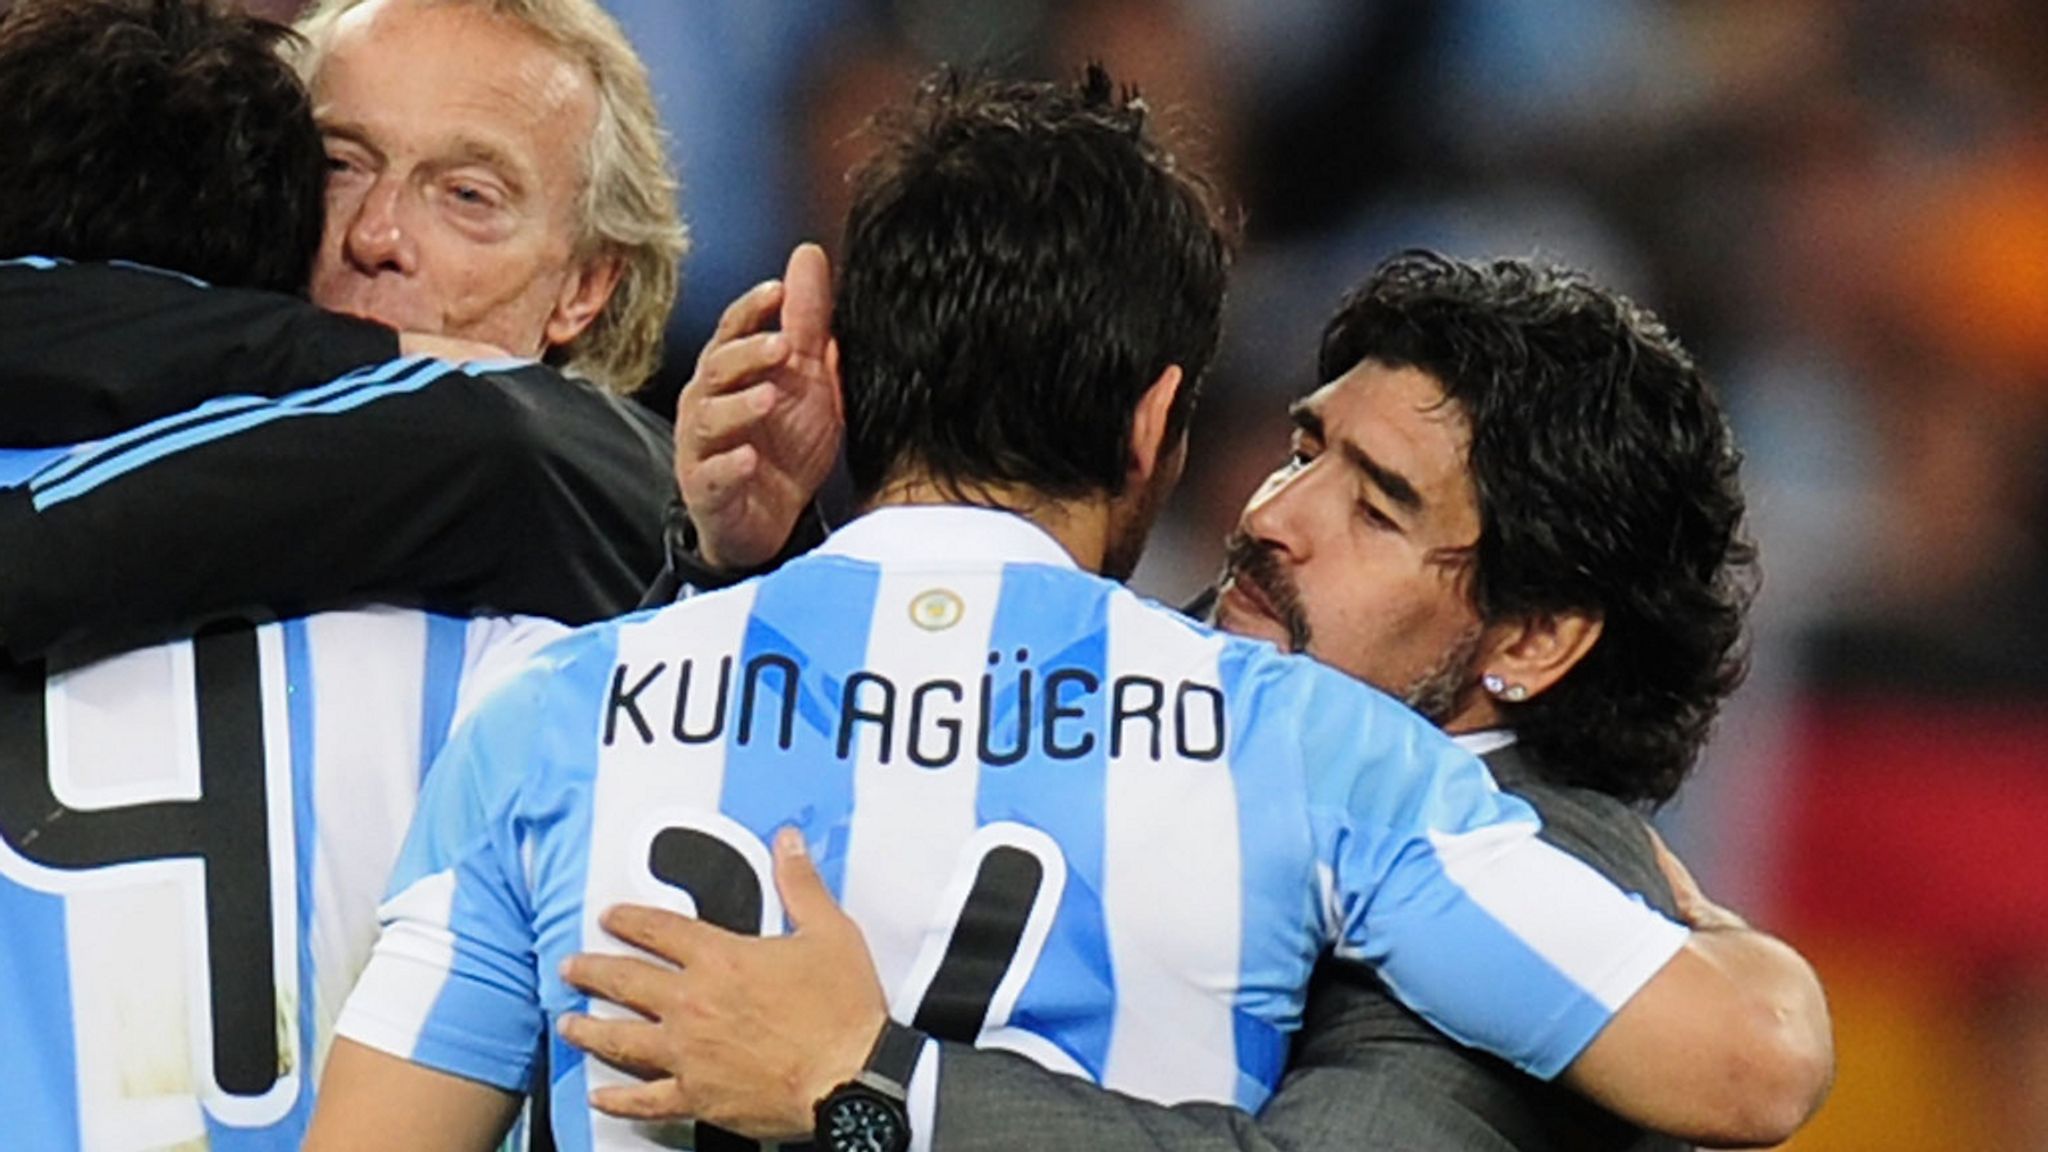 Nhiều người cho rằng nhờ làm "Chạn vương" của Maradona nên Aguero được lên tuyển Argentina và thăng tiến trong bóng đá